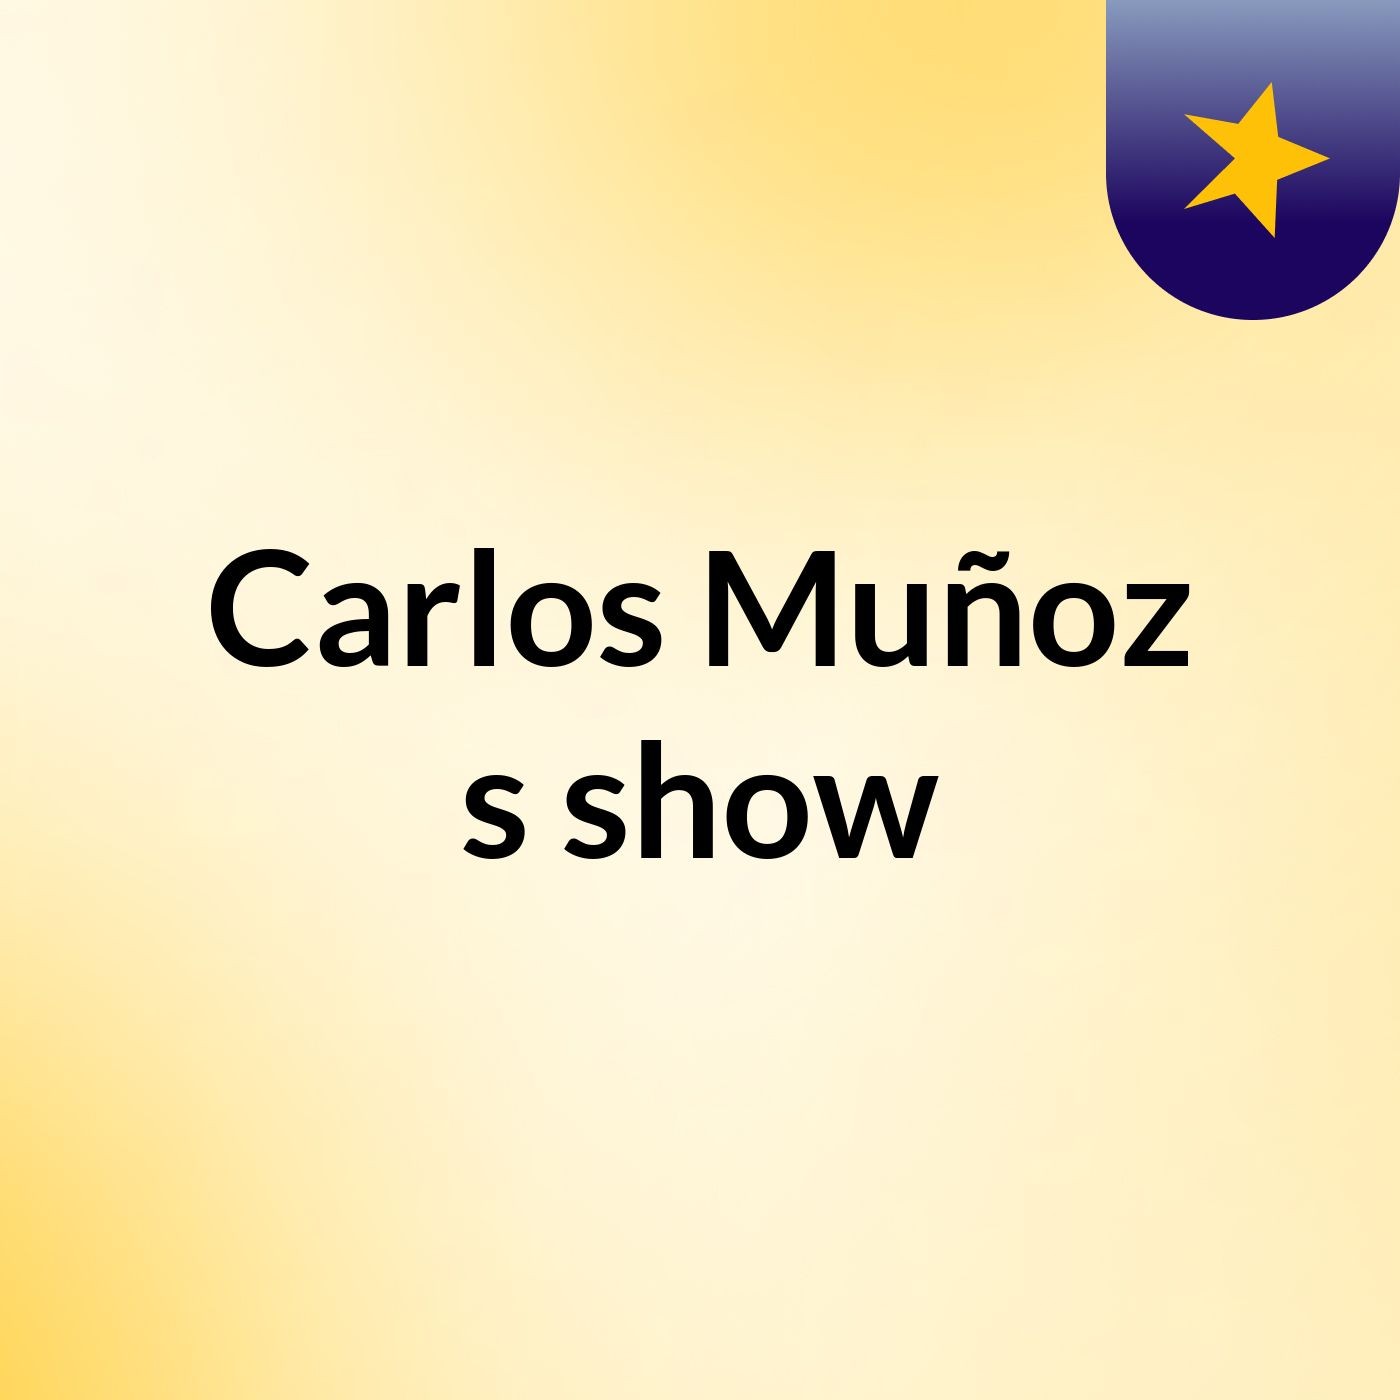 Carlos Muñoz's show